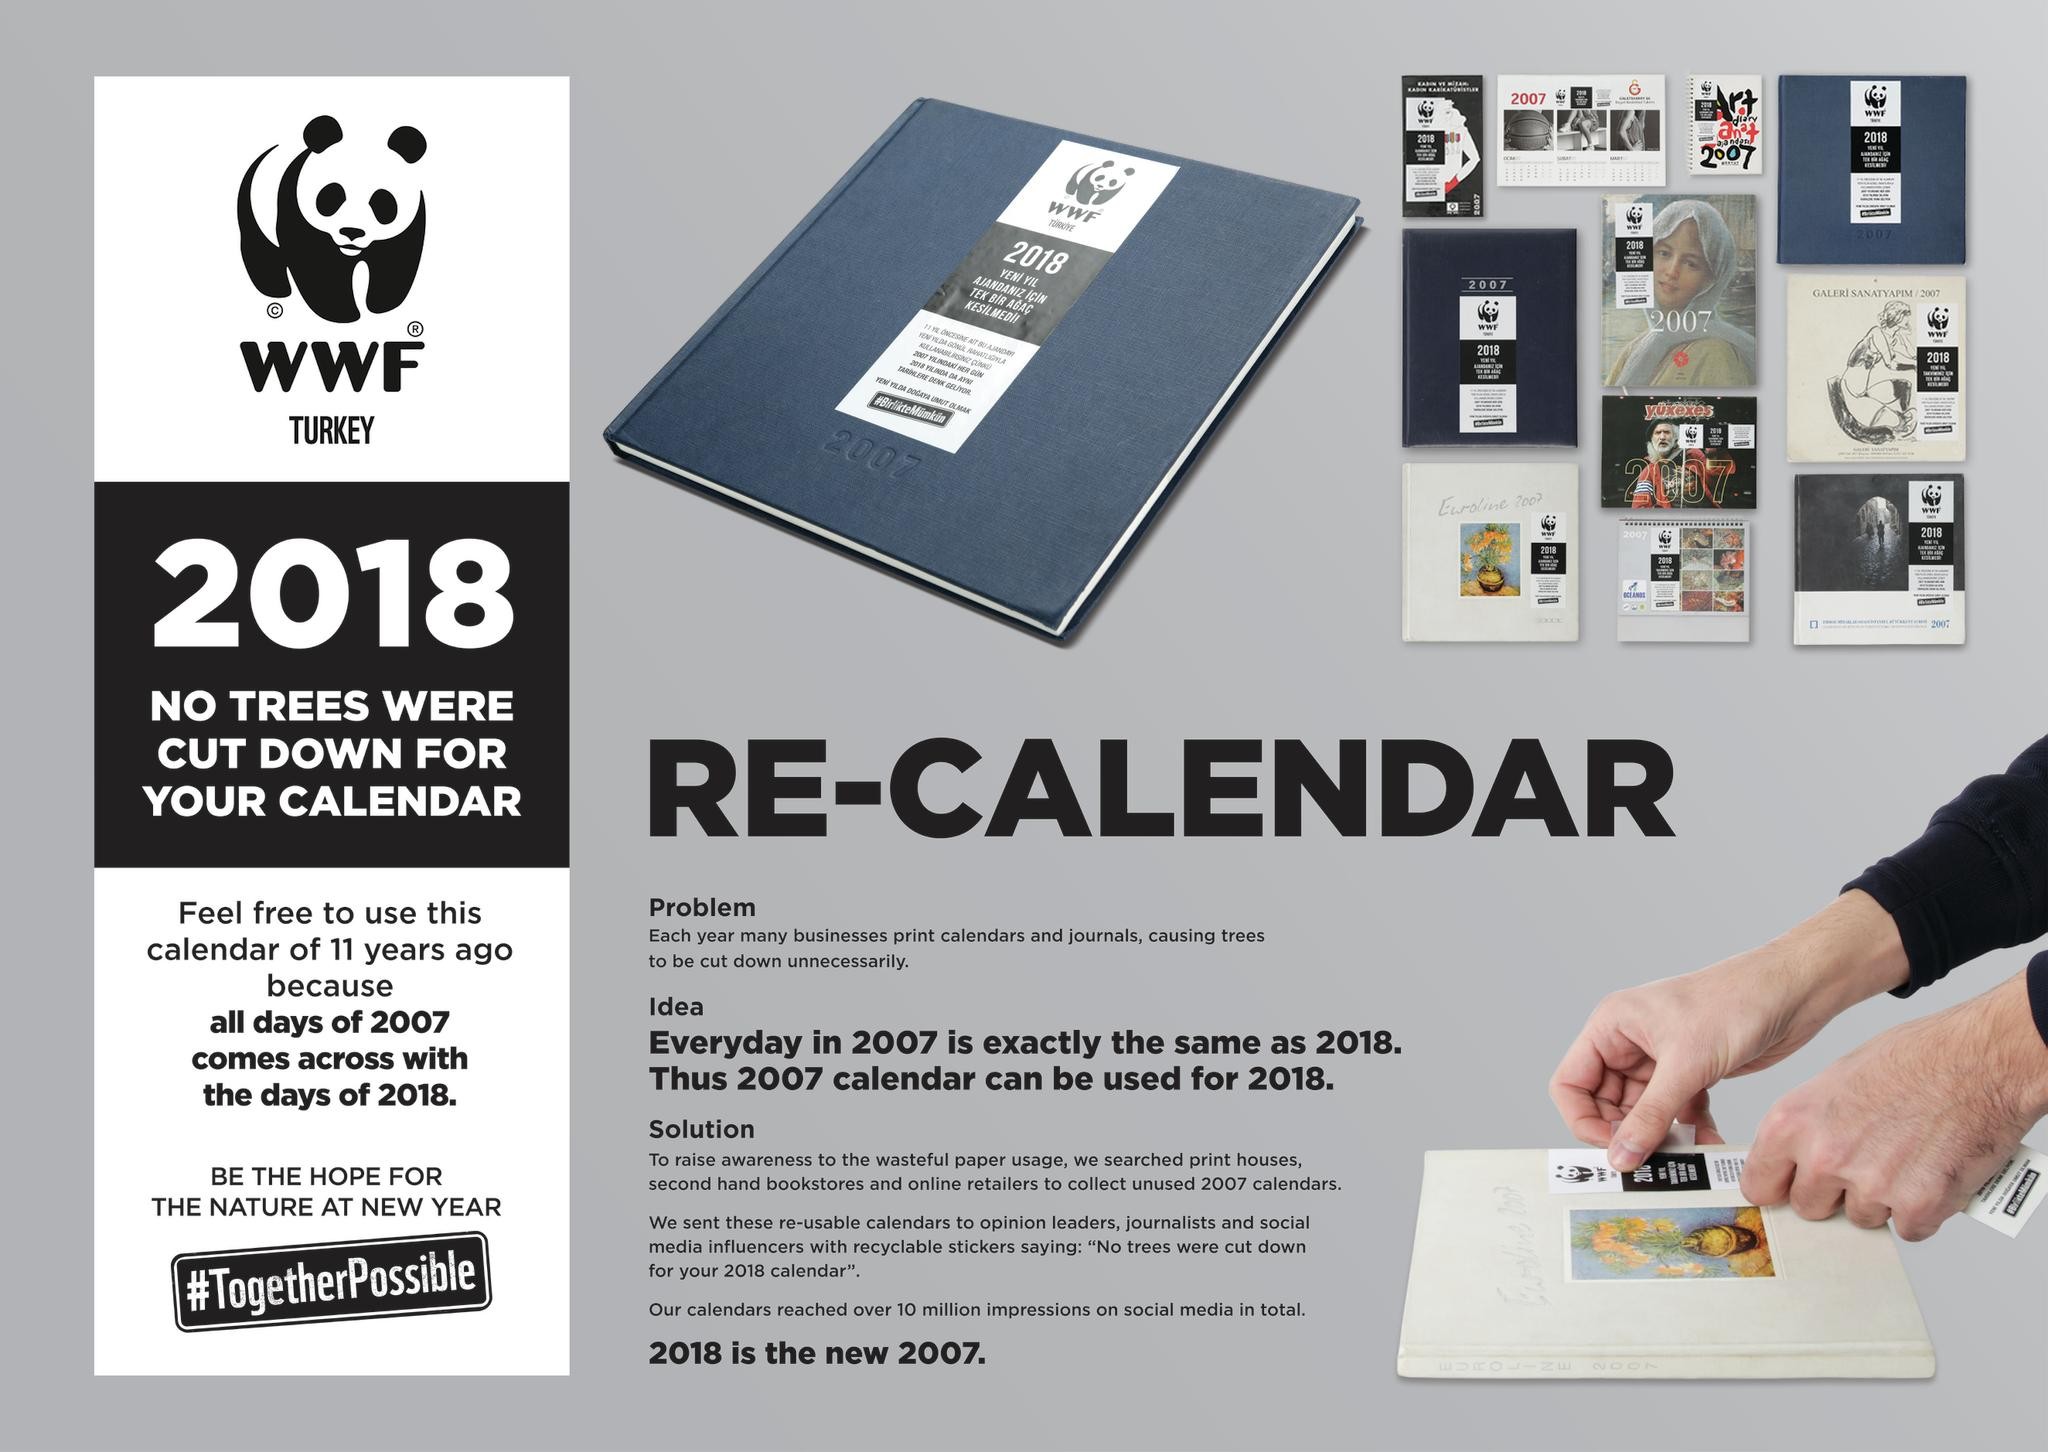 WWF RE-CALENDAR